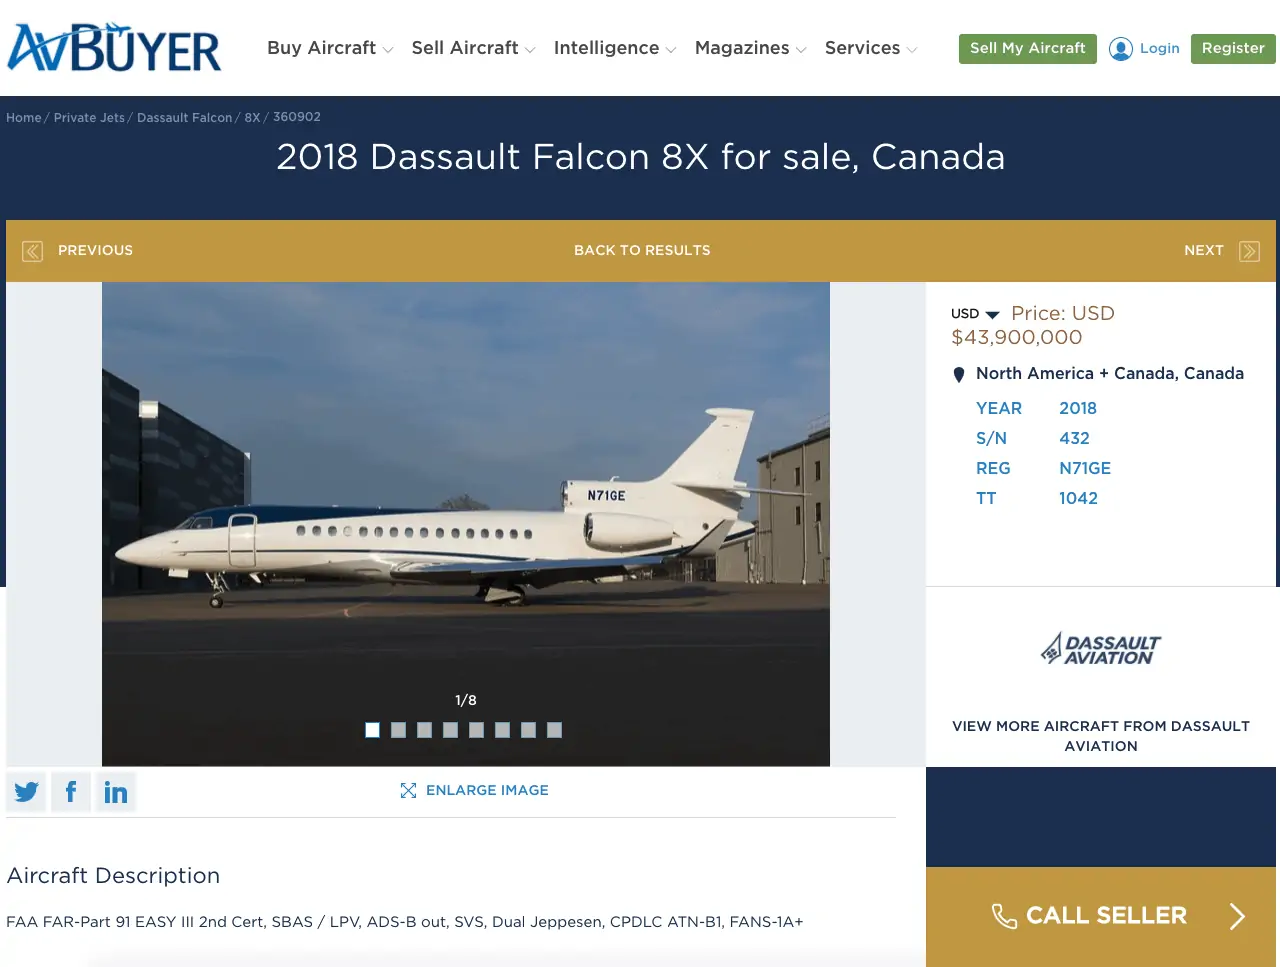 Dassault Falcon 8X për shitje në AVBuyer - blerja e një avioni privat